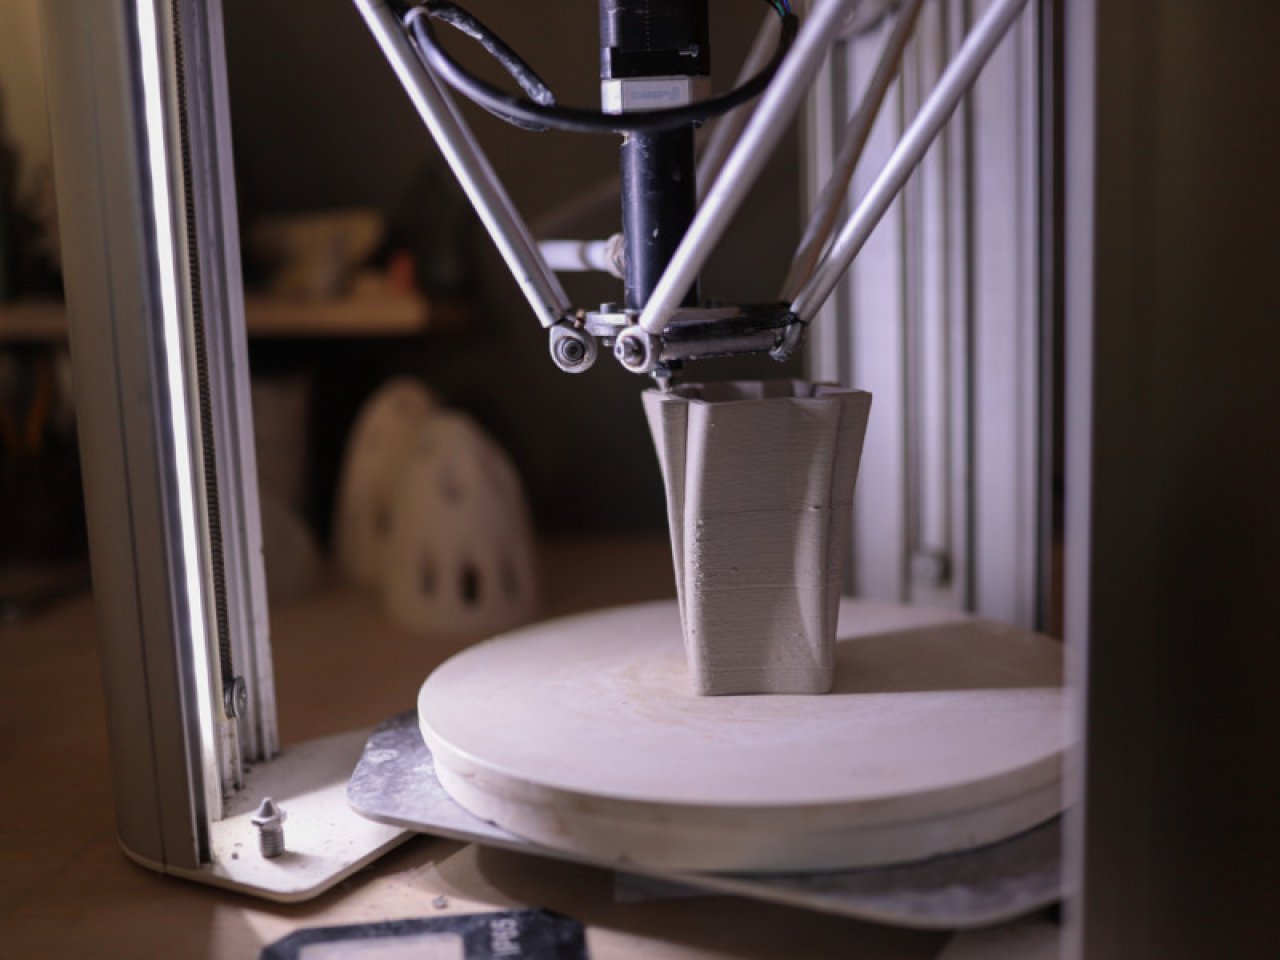 Ленполиграфмаш: индустриальная археология и инновации. Экскурсия с посещением студии 3D печати керамики-8